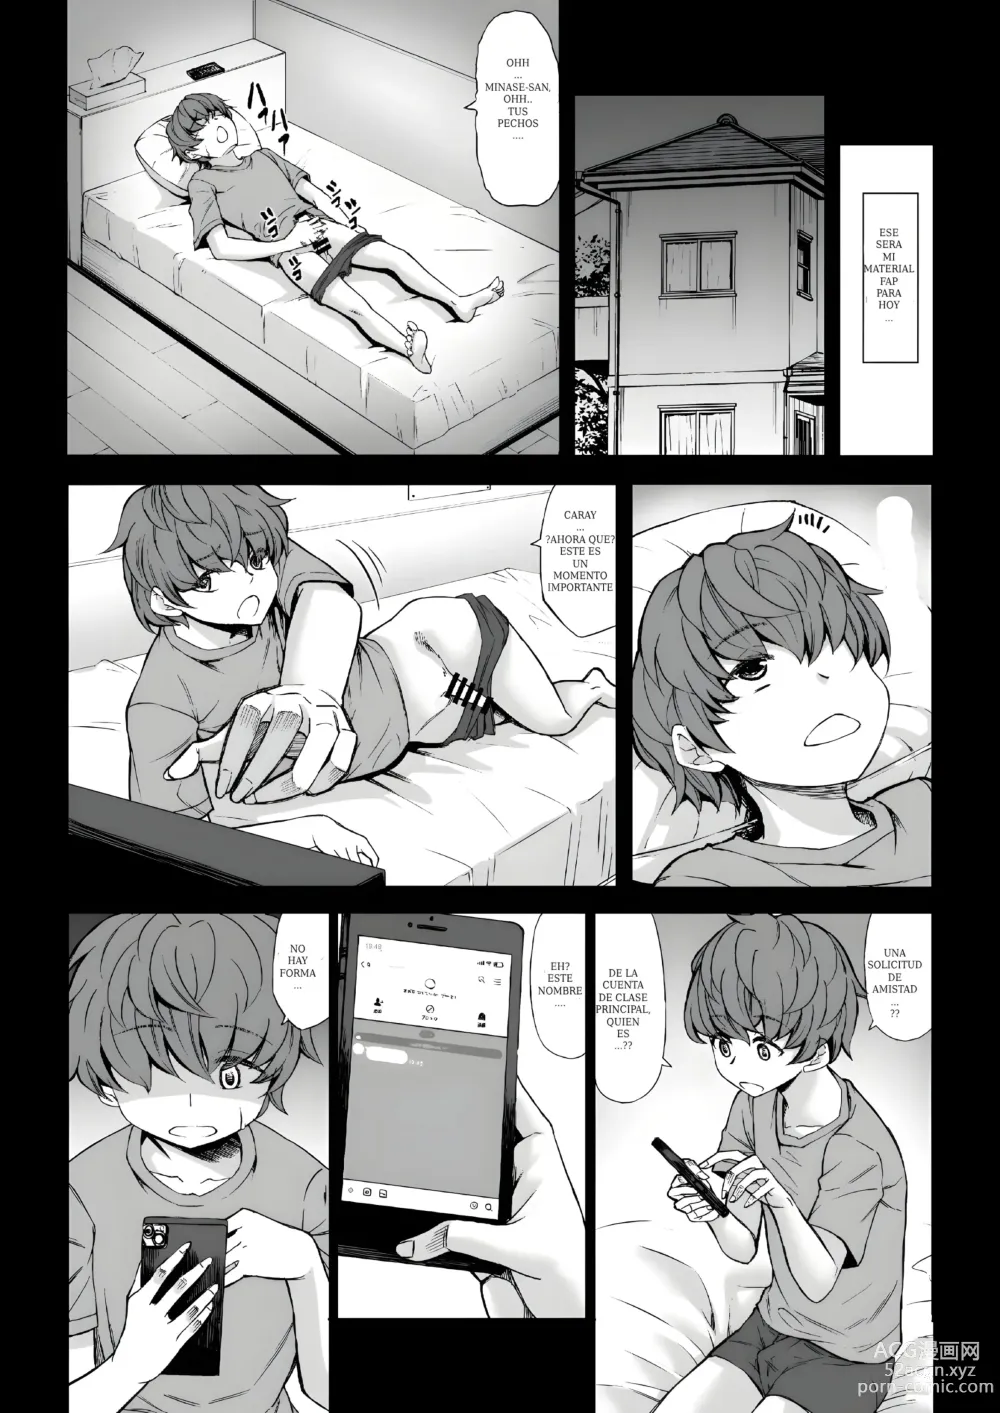 Page 6 of doujinshi Mi virginidad fue robada mientras dormia